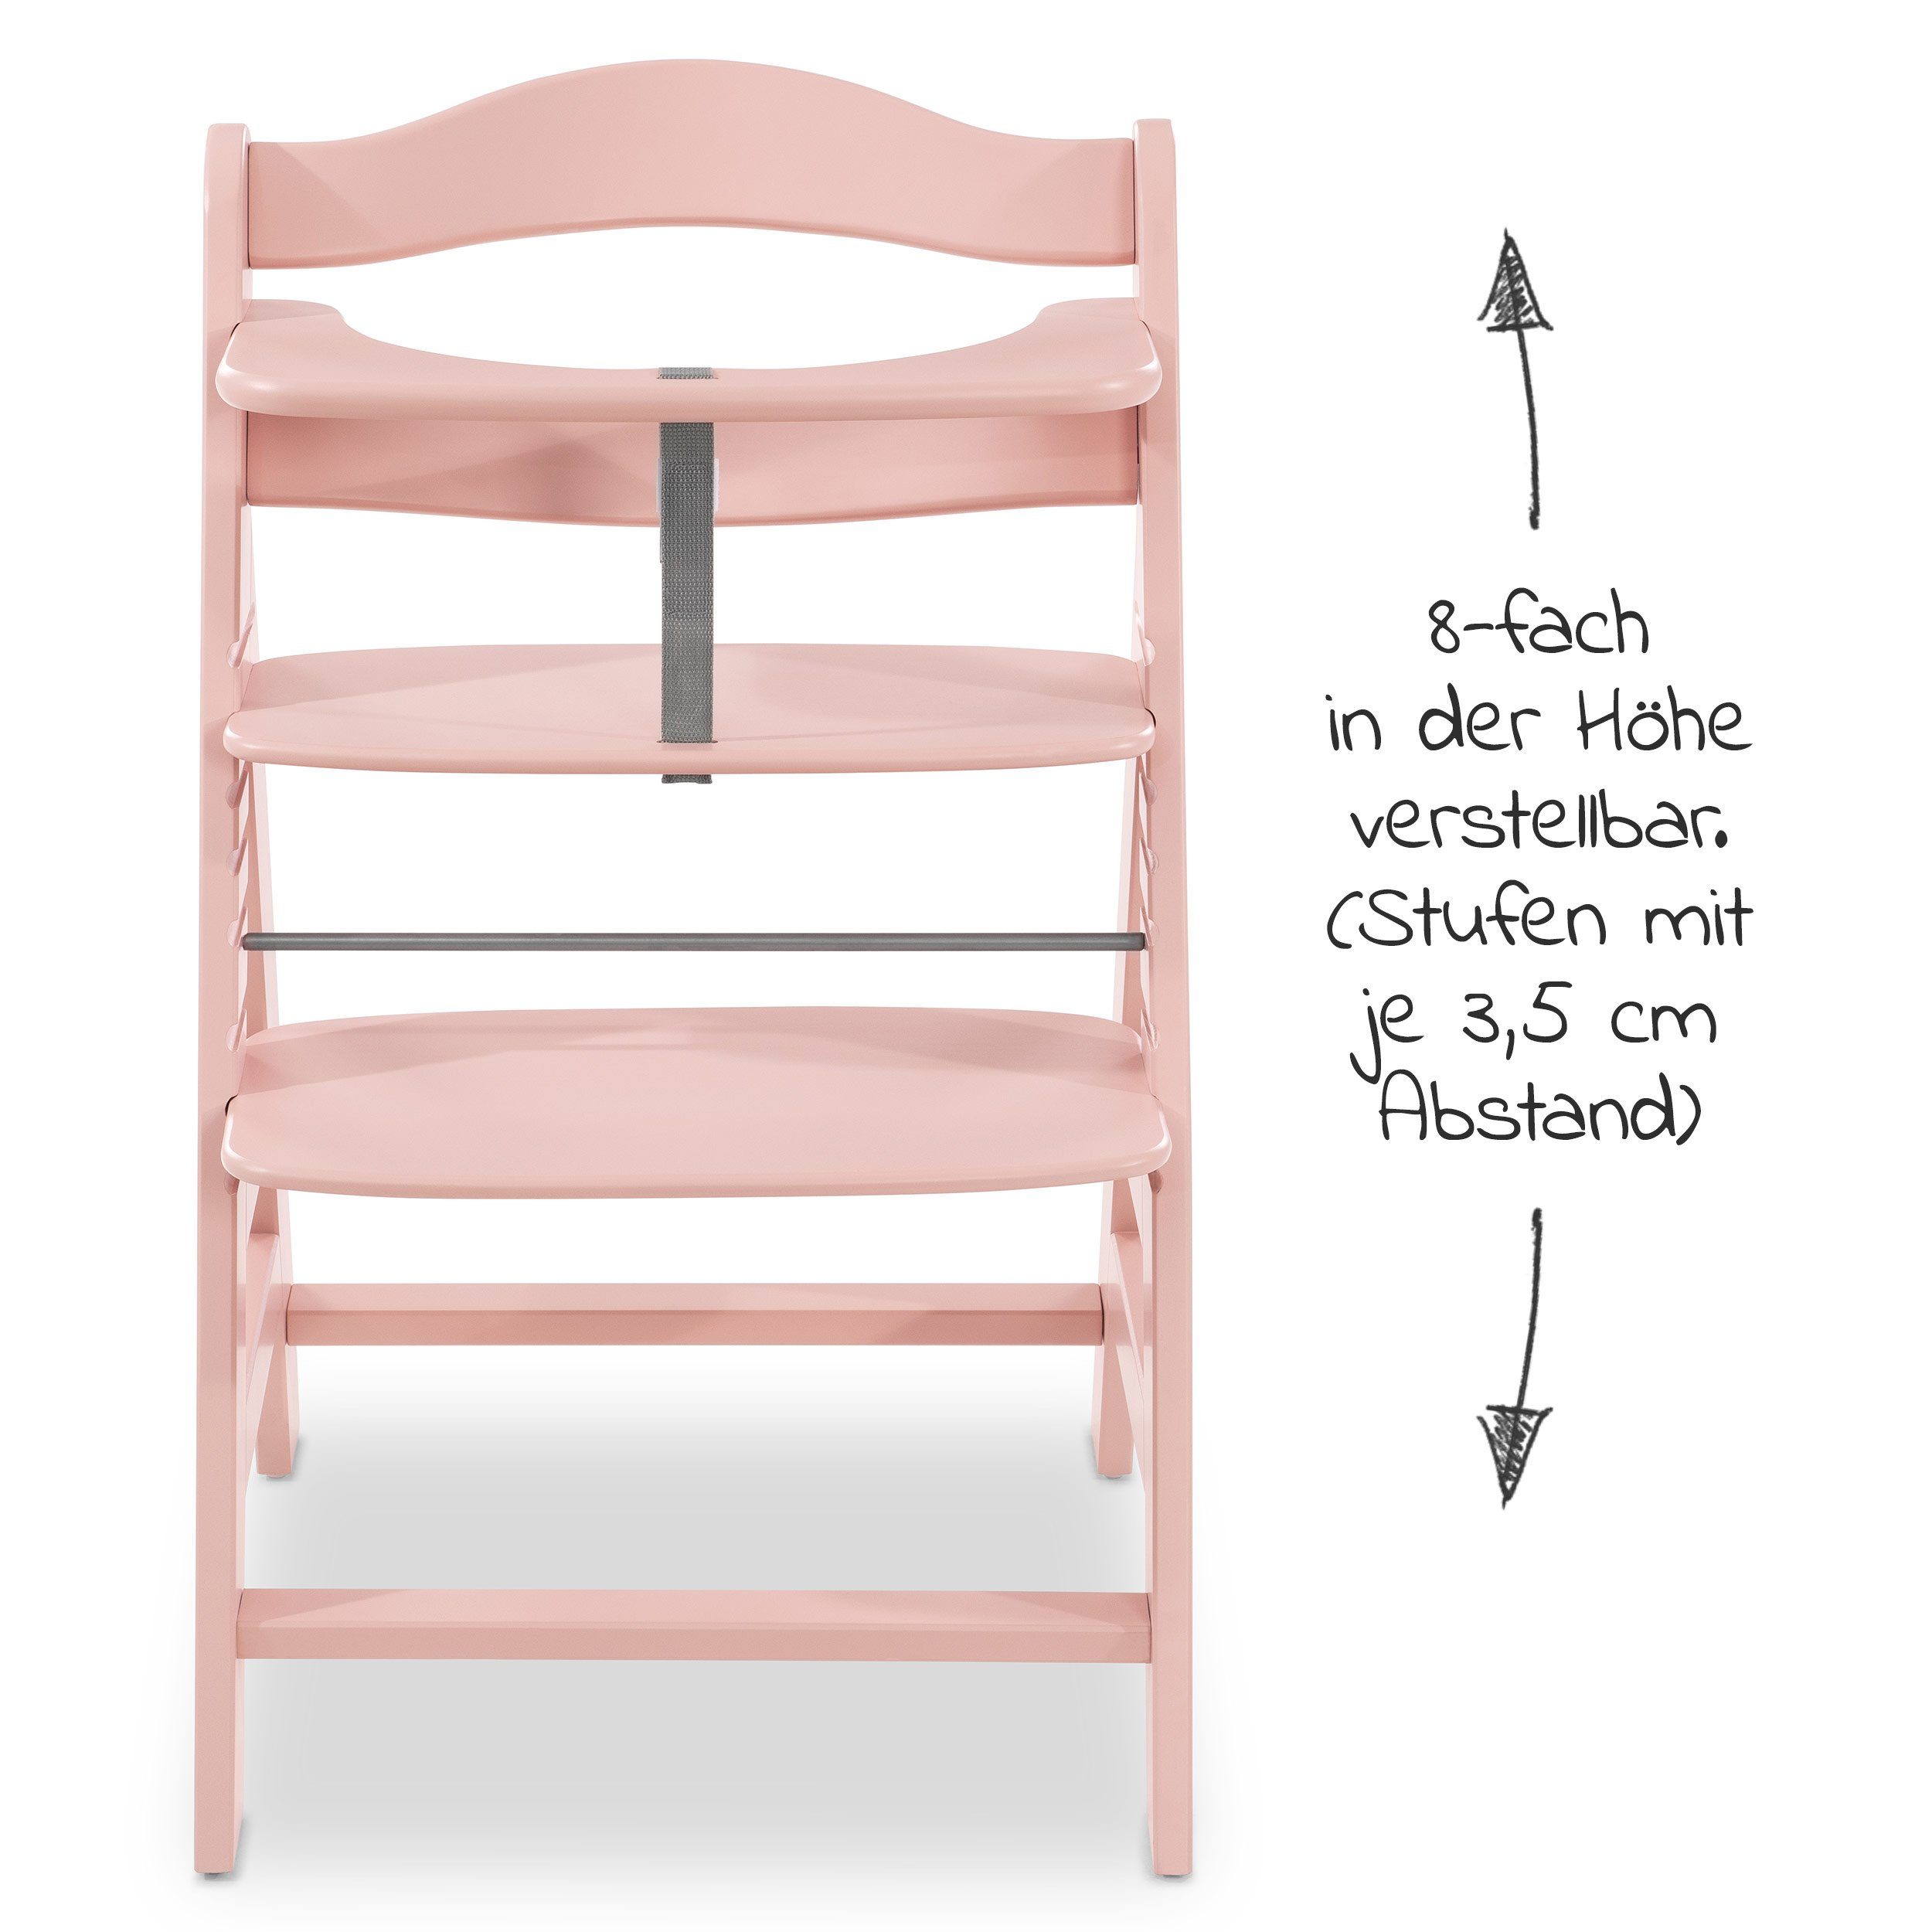 Möbel Babymöbel Hauck Hochstuhl Alpha Plus Rose (2 Stück), Mitwachsender Holz Treppenhochstuhl - Kinder Hochstuhl mit Schutzbüge